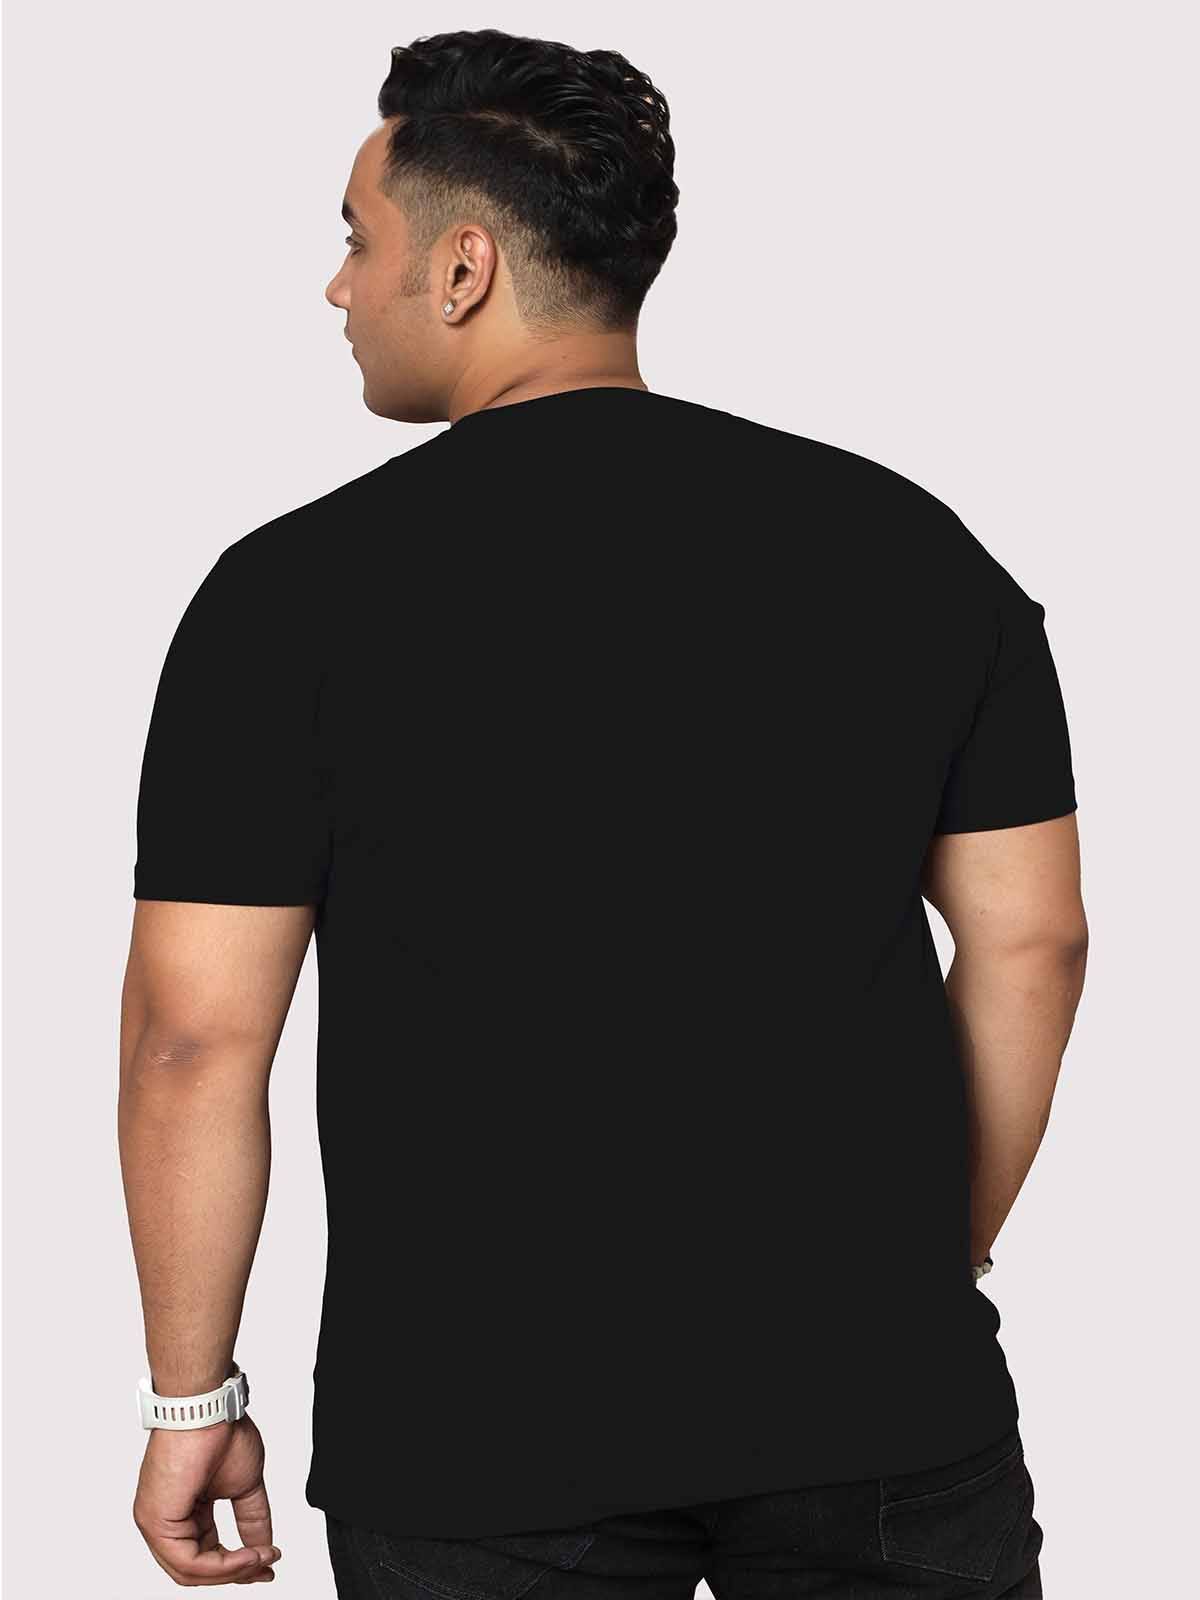 Men Plus Size Black Mountain Adventure Printed Round Neck T-Shirt - Guniaa Fashions